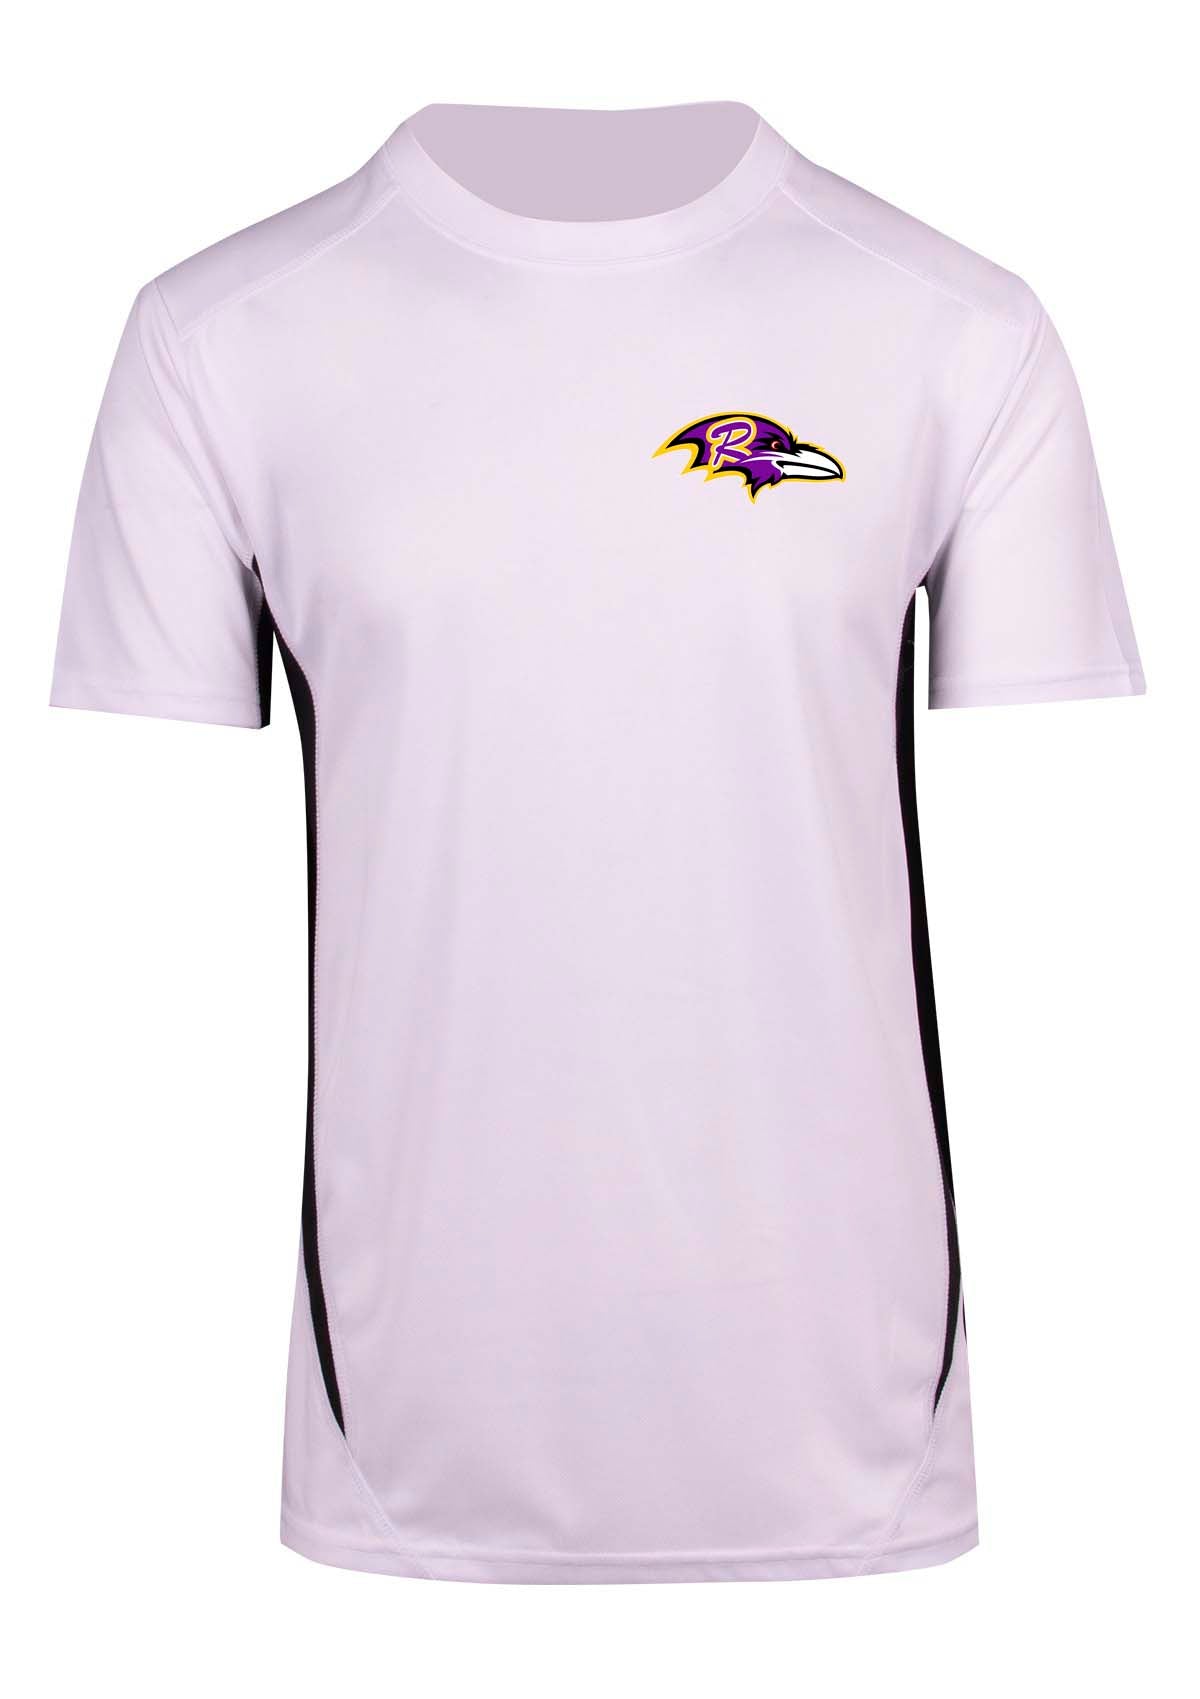 Rockingham Ravens Softball Training Shirt Double sided